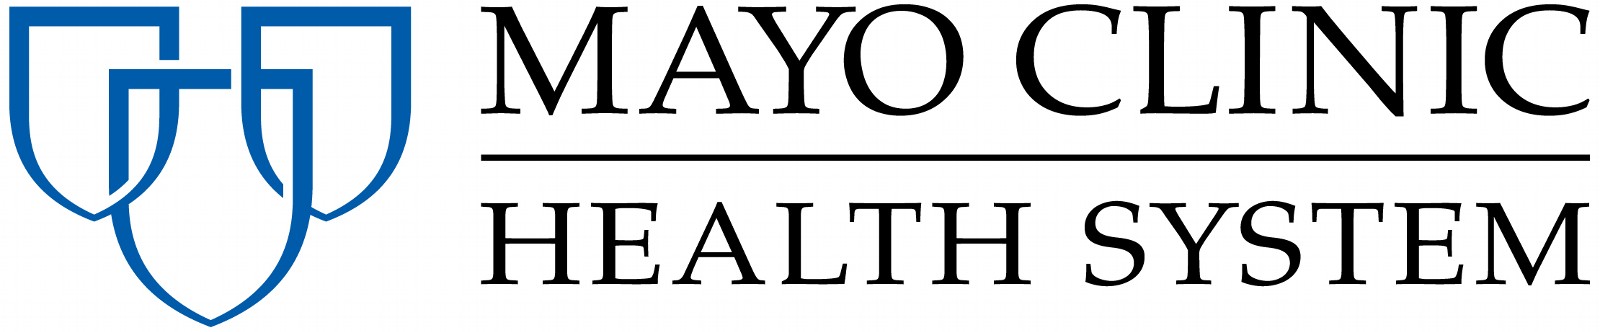 Mayo Clinic Health System logo